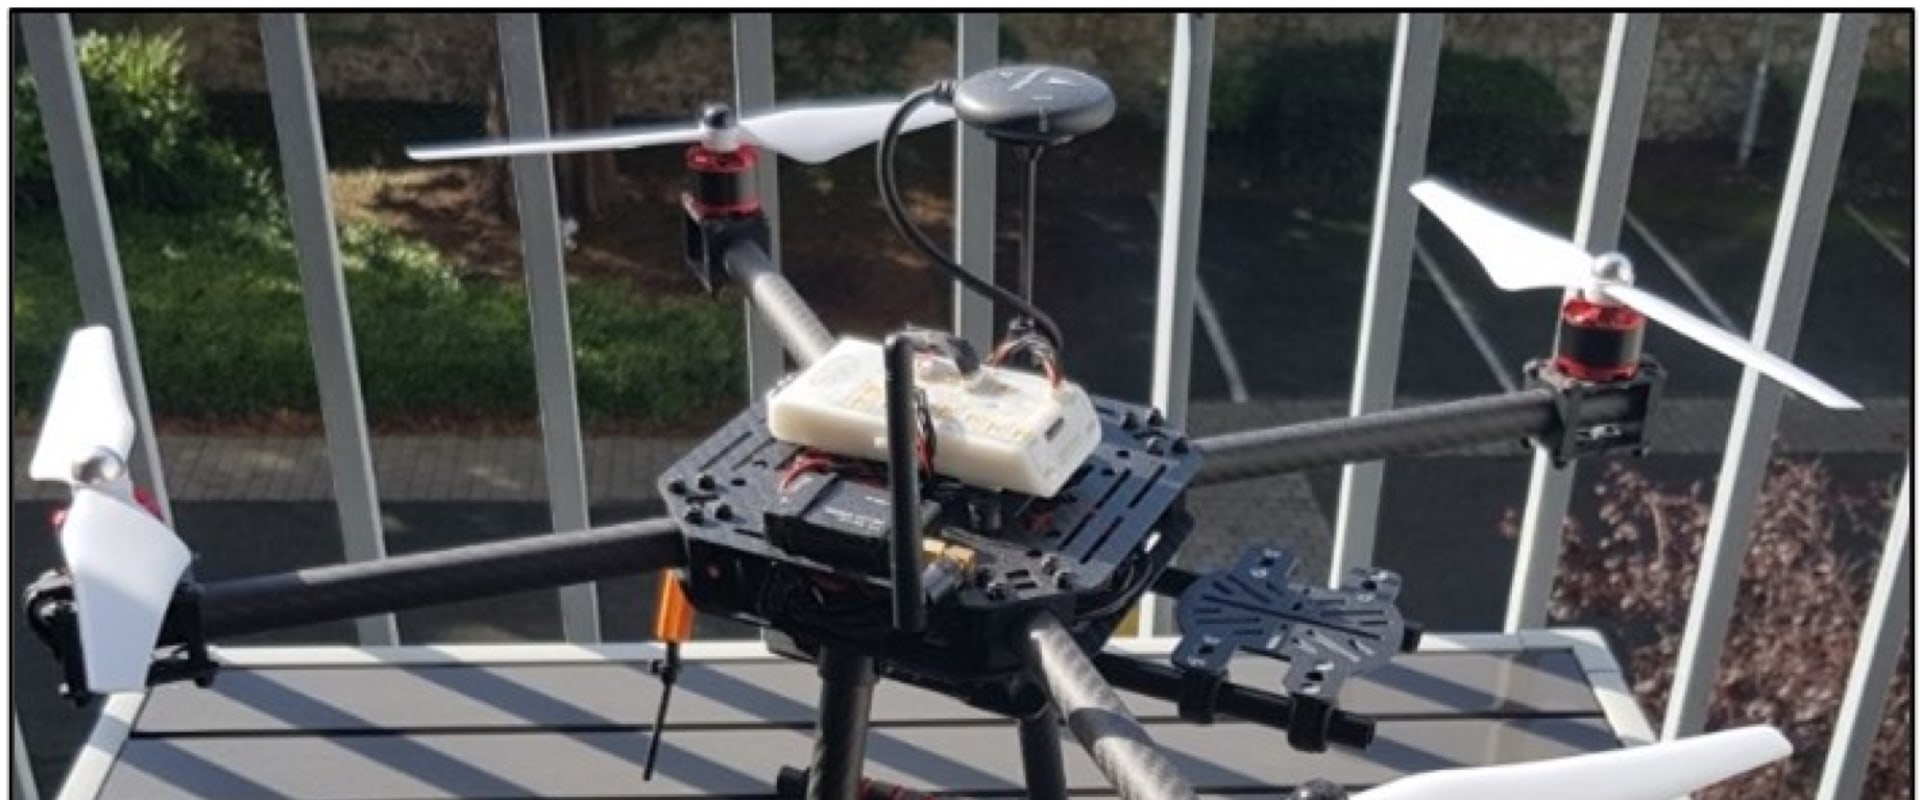 How do drones fly autonomously?